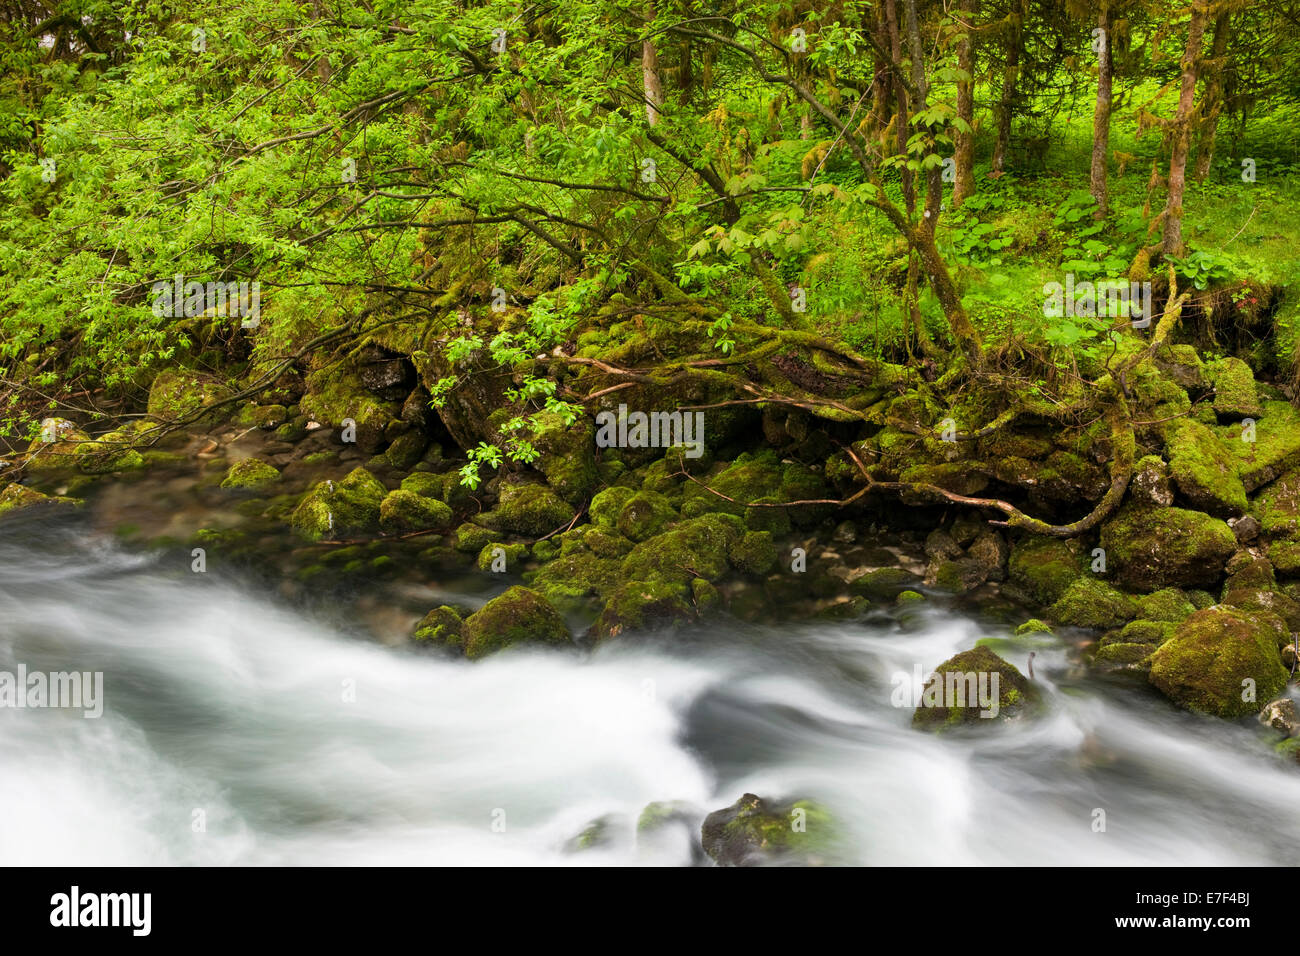 Bach mit moosbewachsenen Steinen, Dschungel, Gollinger Wasserfall, Salzburg, Österreich Stockfoto